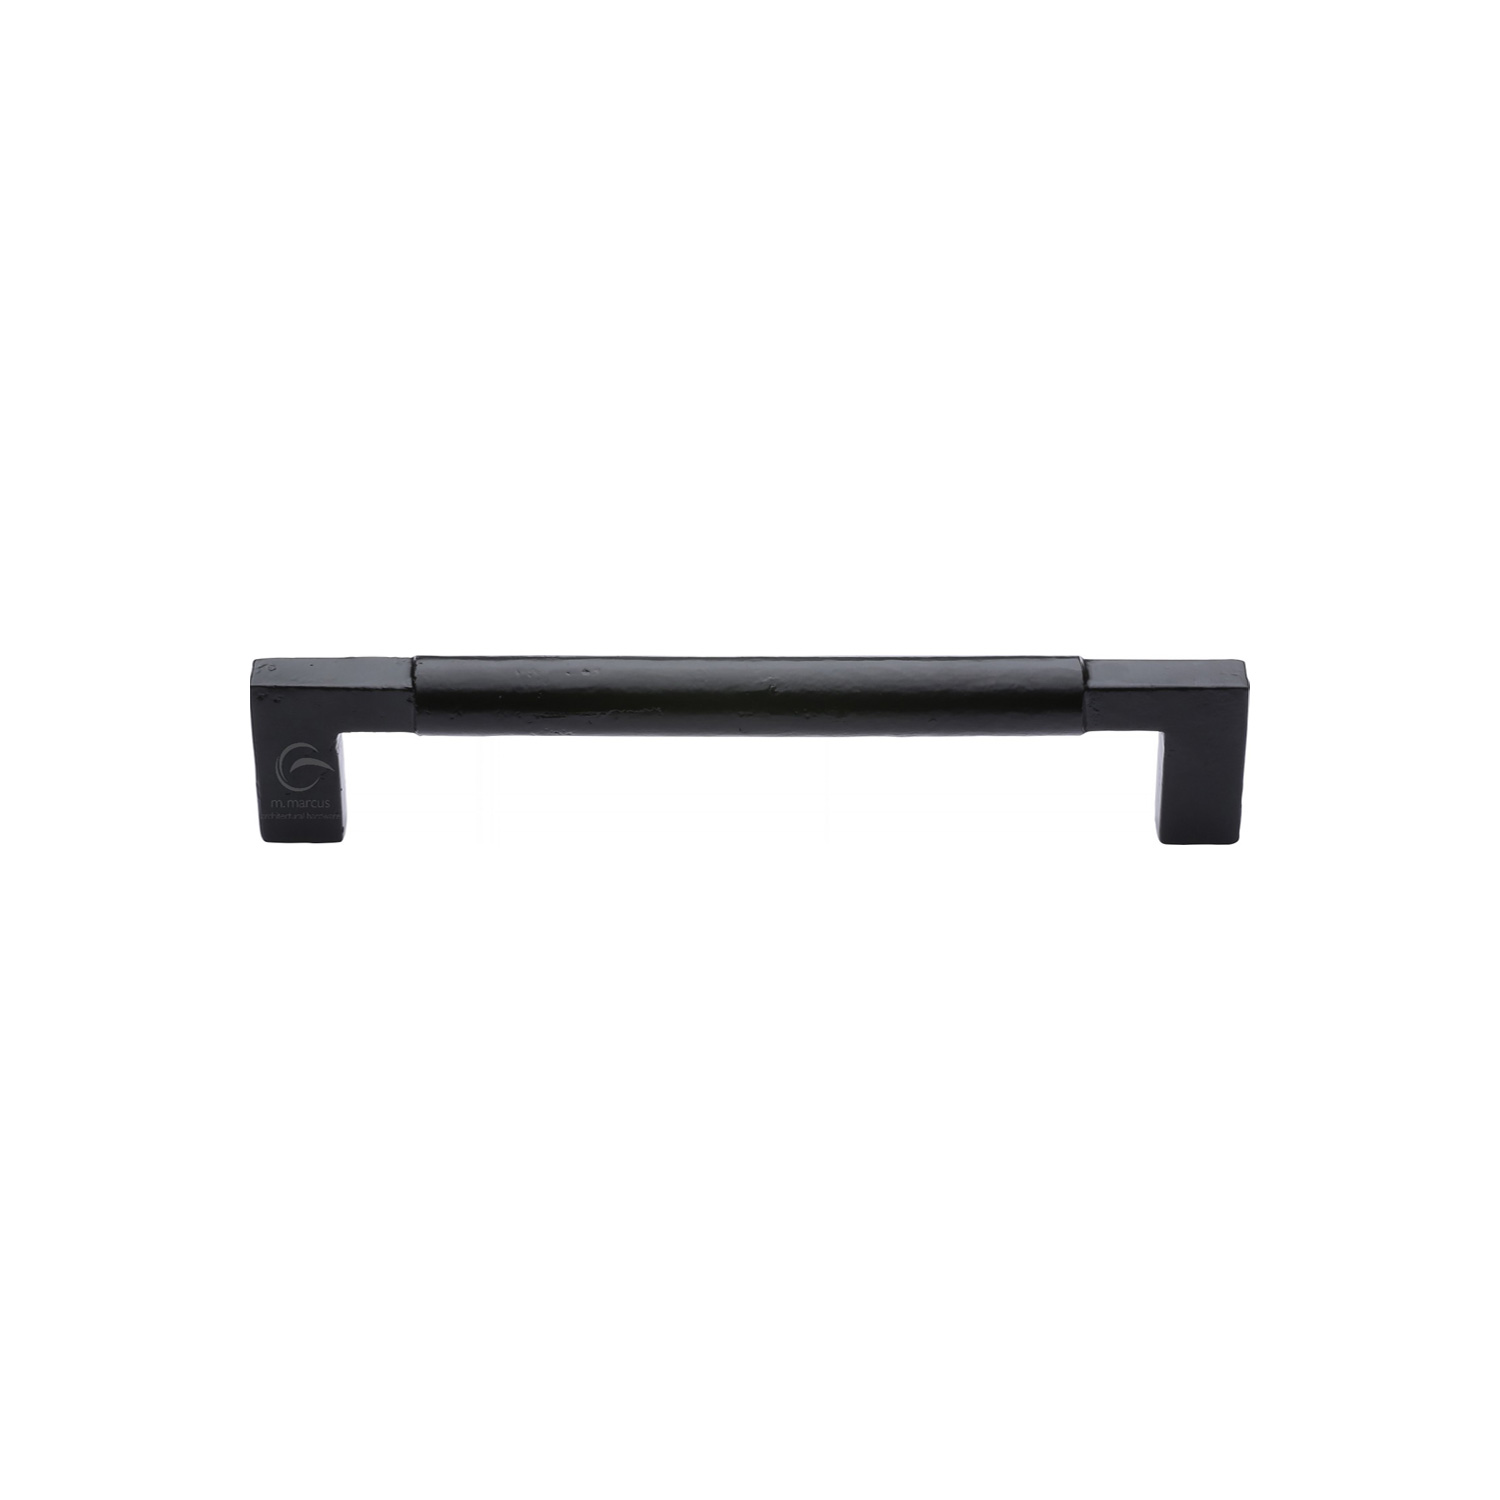 Black Iron Rustic Cabinet Pull Bauhaus Design 305mm